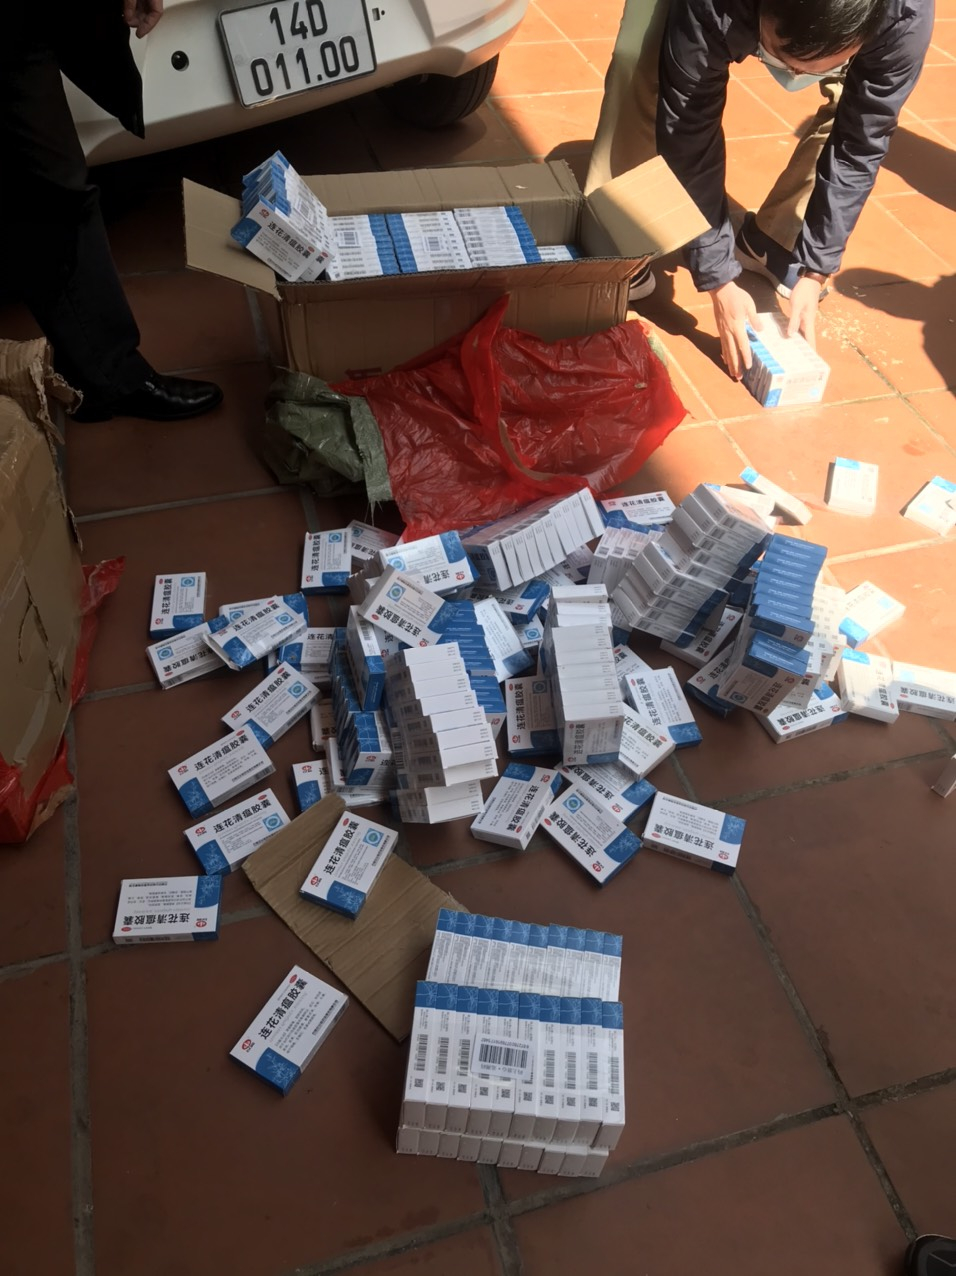 Tang vật gồm 400 hộp thuốc hỗ trợ điều trị Covid-19 nhập lậu bị bắt giữ.